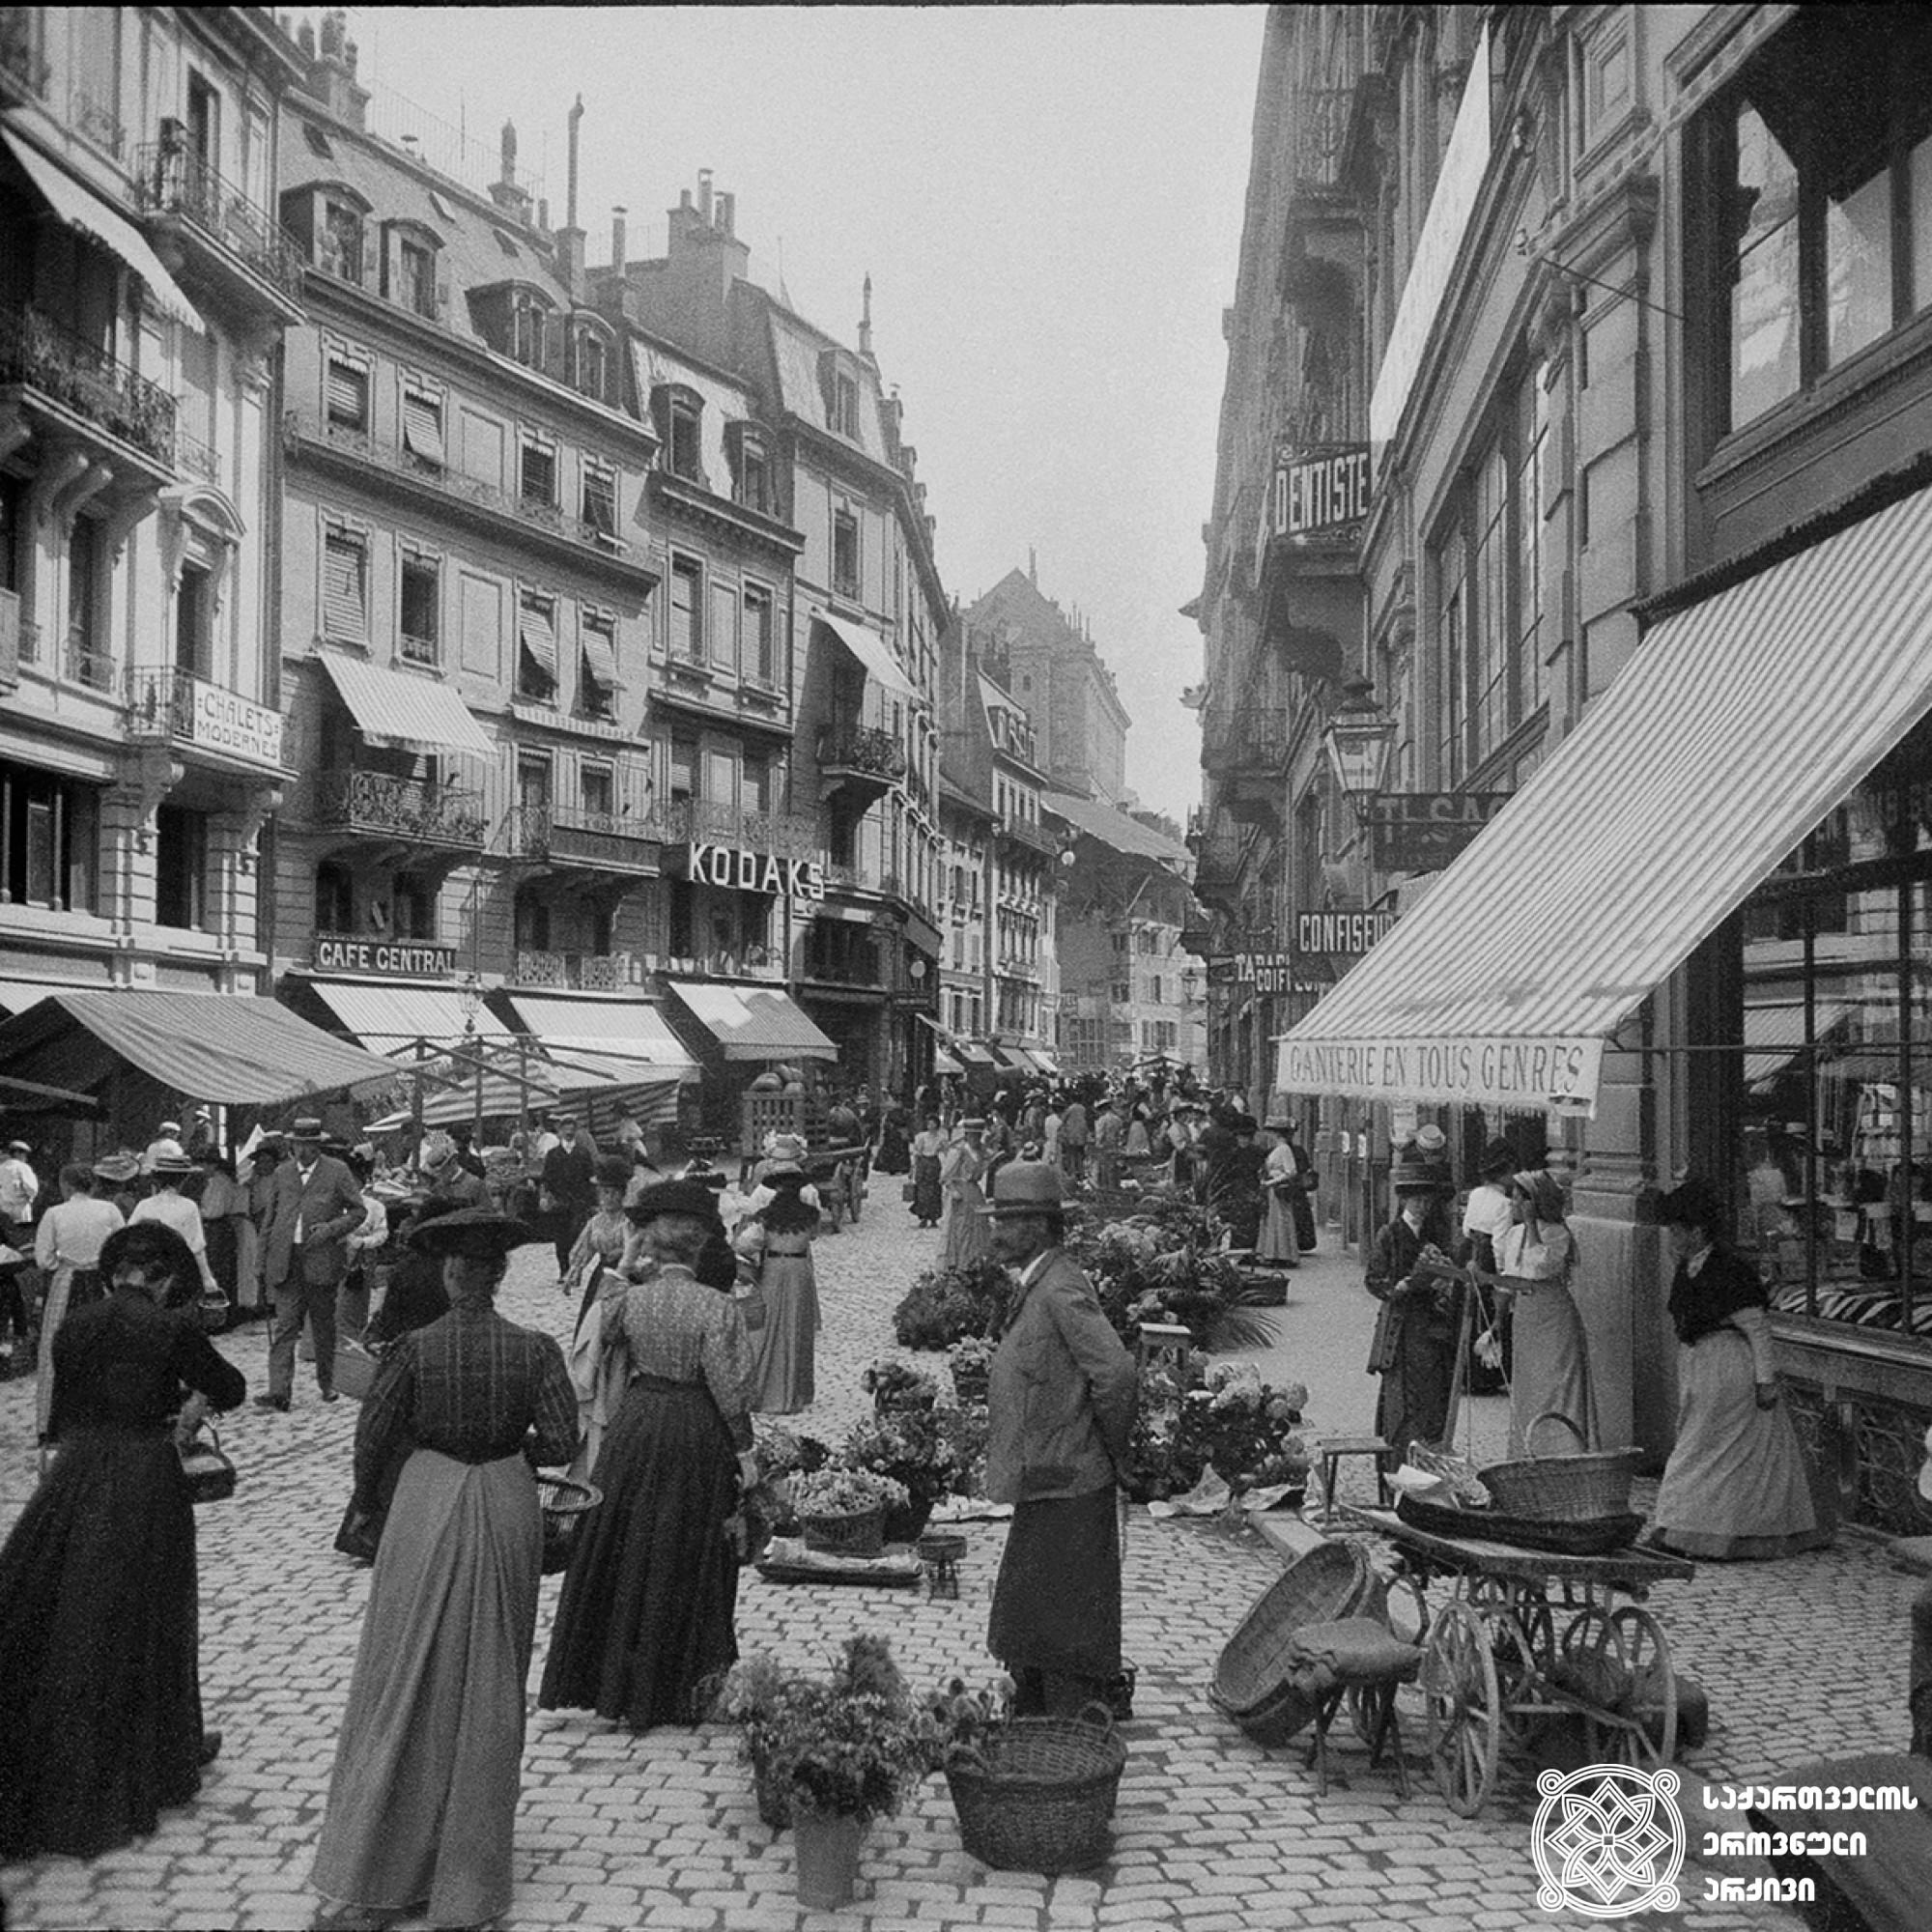 ბაზრობა ლოზანას ქუჩაში, შვეიცარია <br>
1909 წელი <br>
გიგლო ყარალაშვილის კოლექცია <br>

Market on Lausanne Street, Switzerland <br>
1909  <br>
Giglo Karalashvili collection